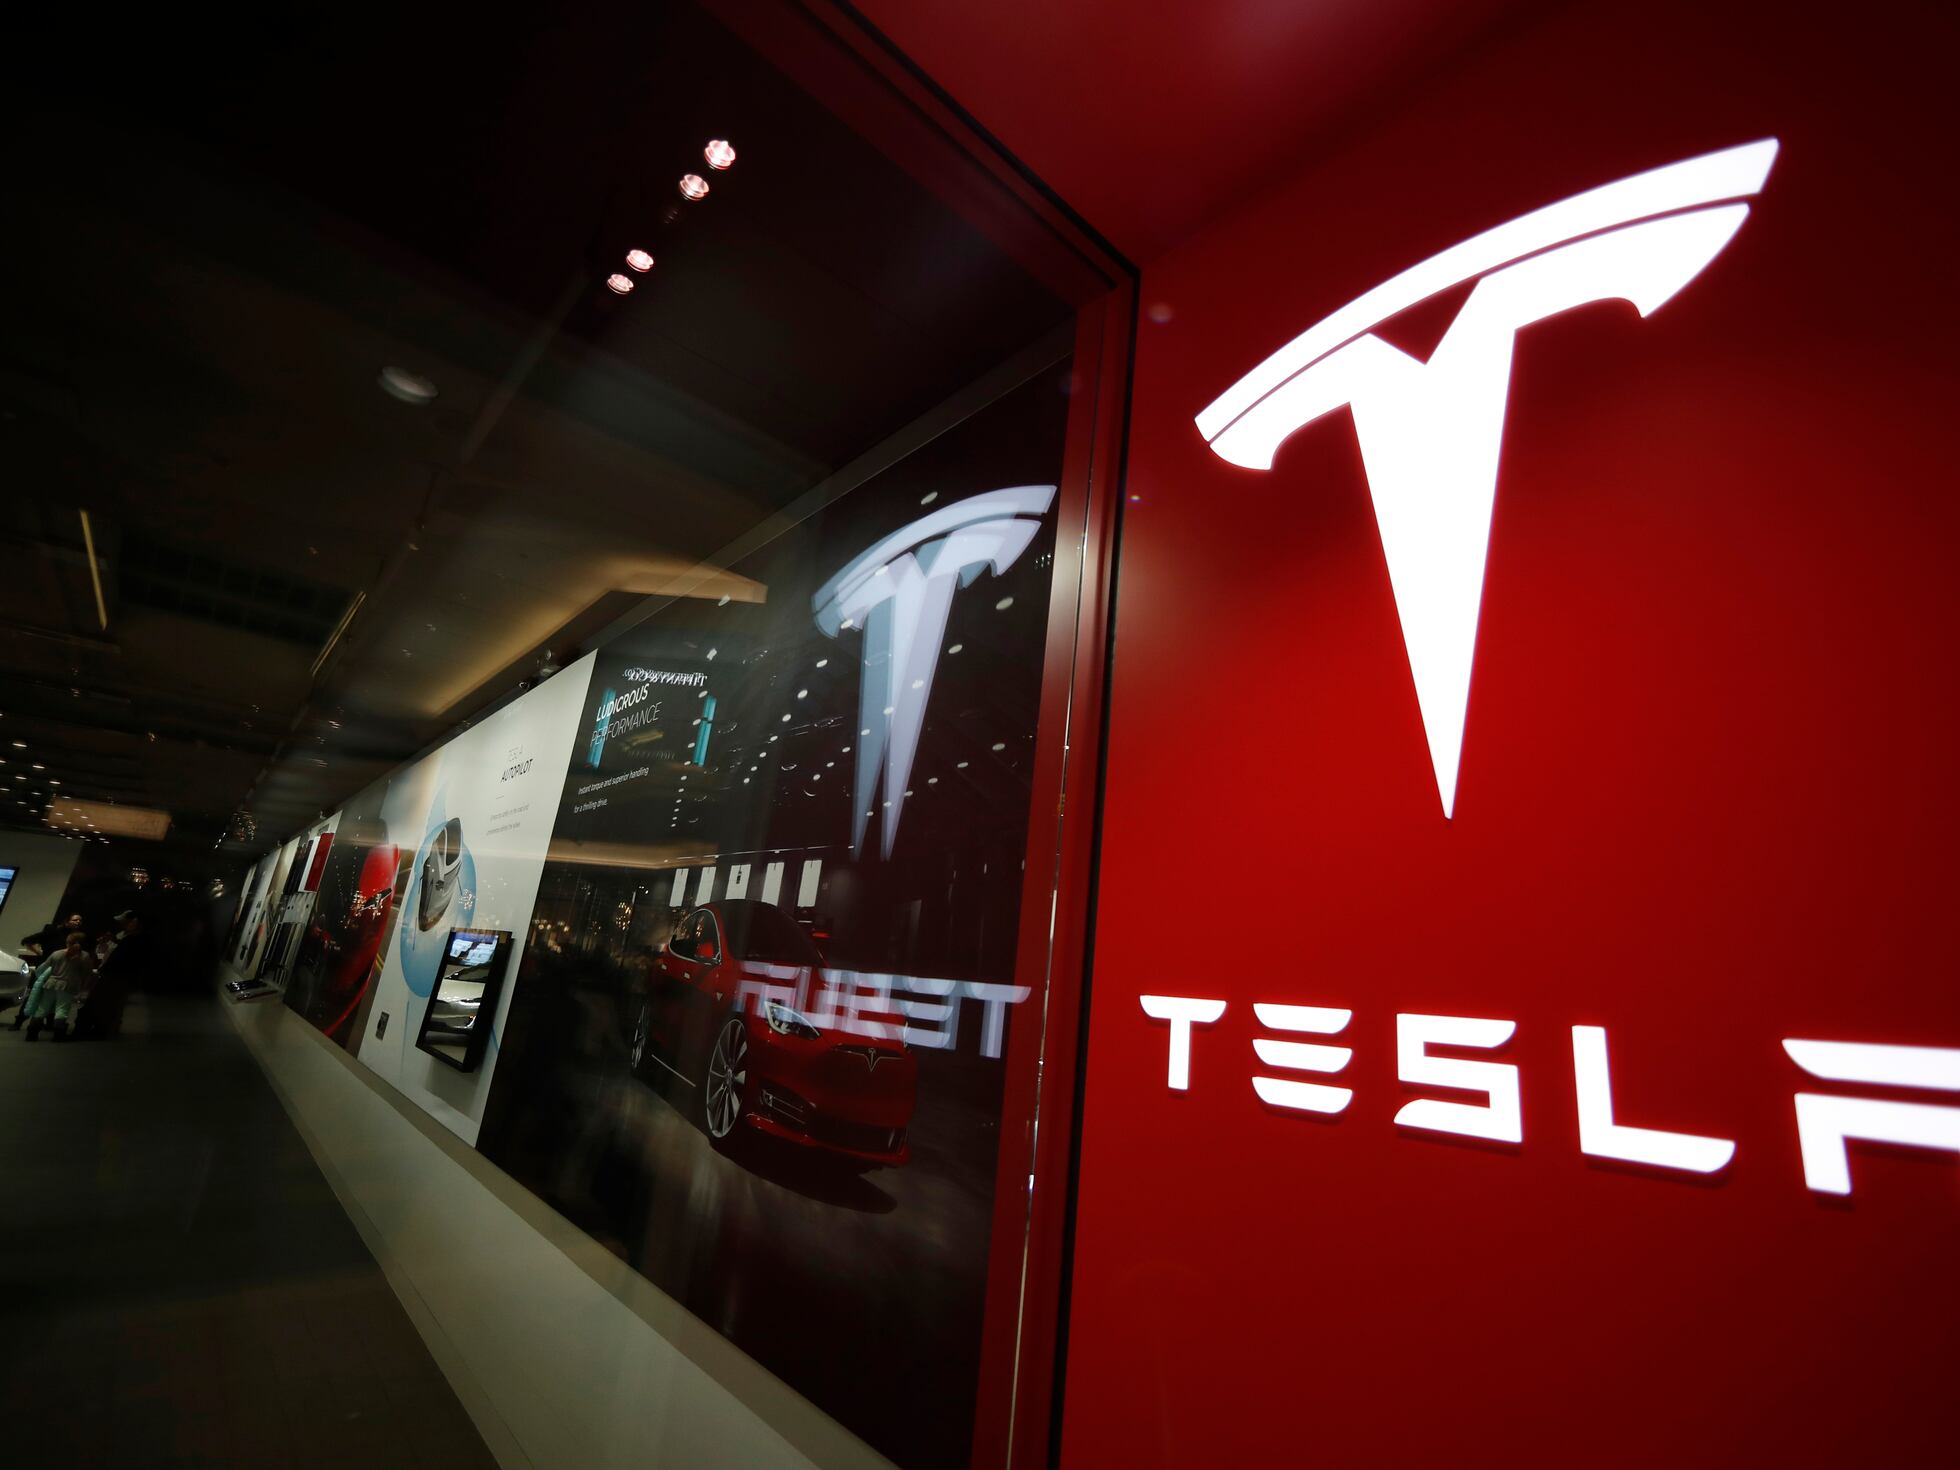 Глава Tesla Cybertruck уволен, часть команды Supercharger возвращается